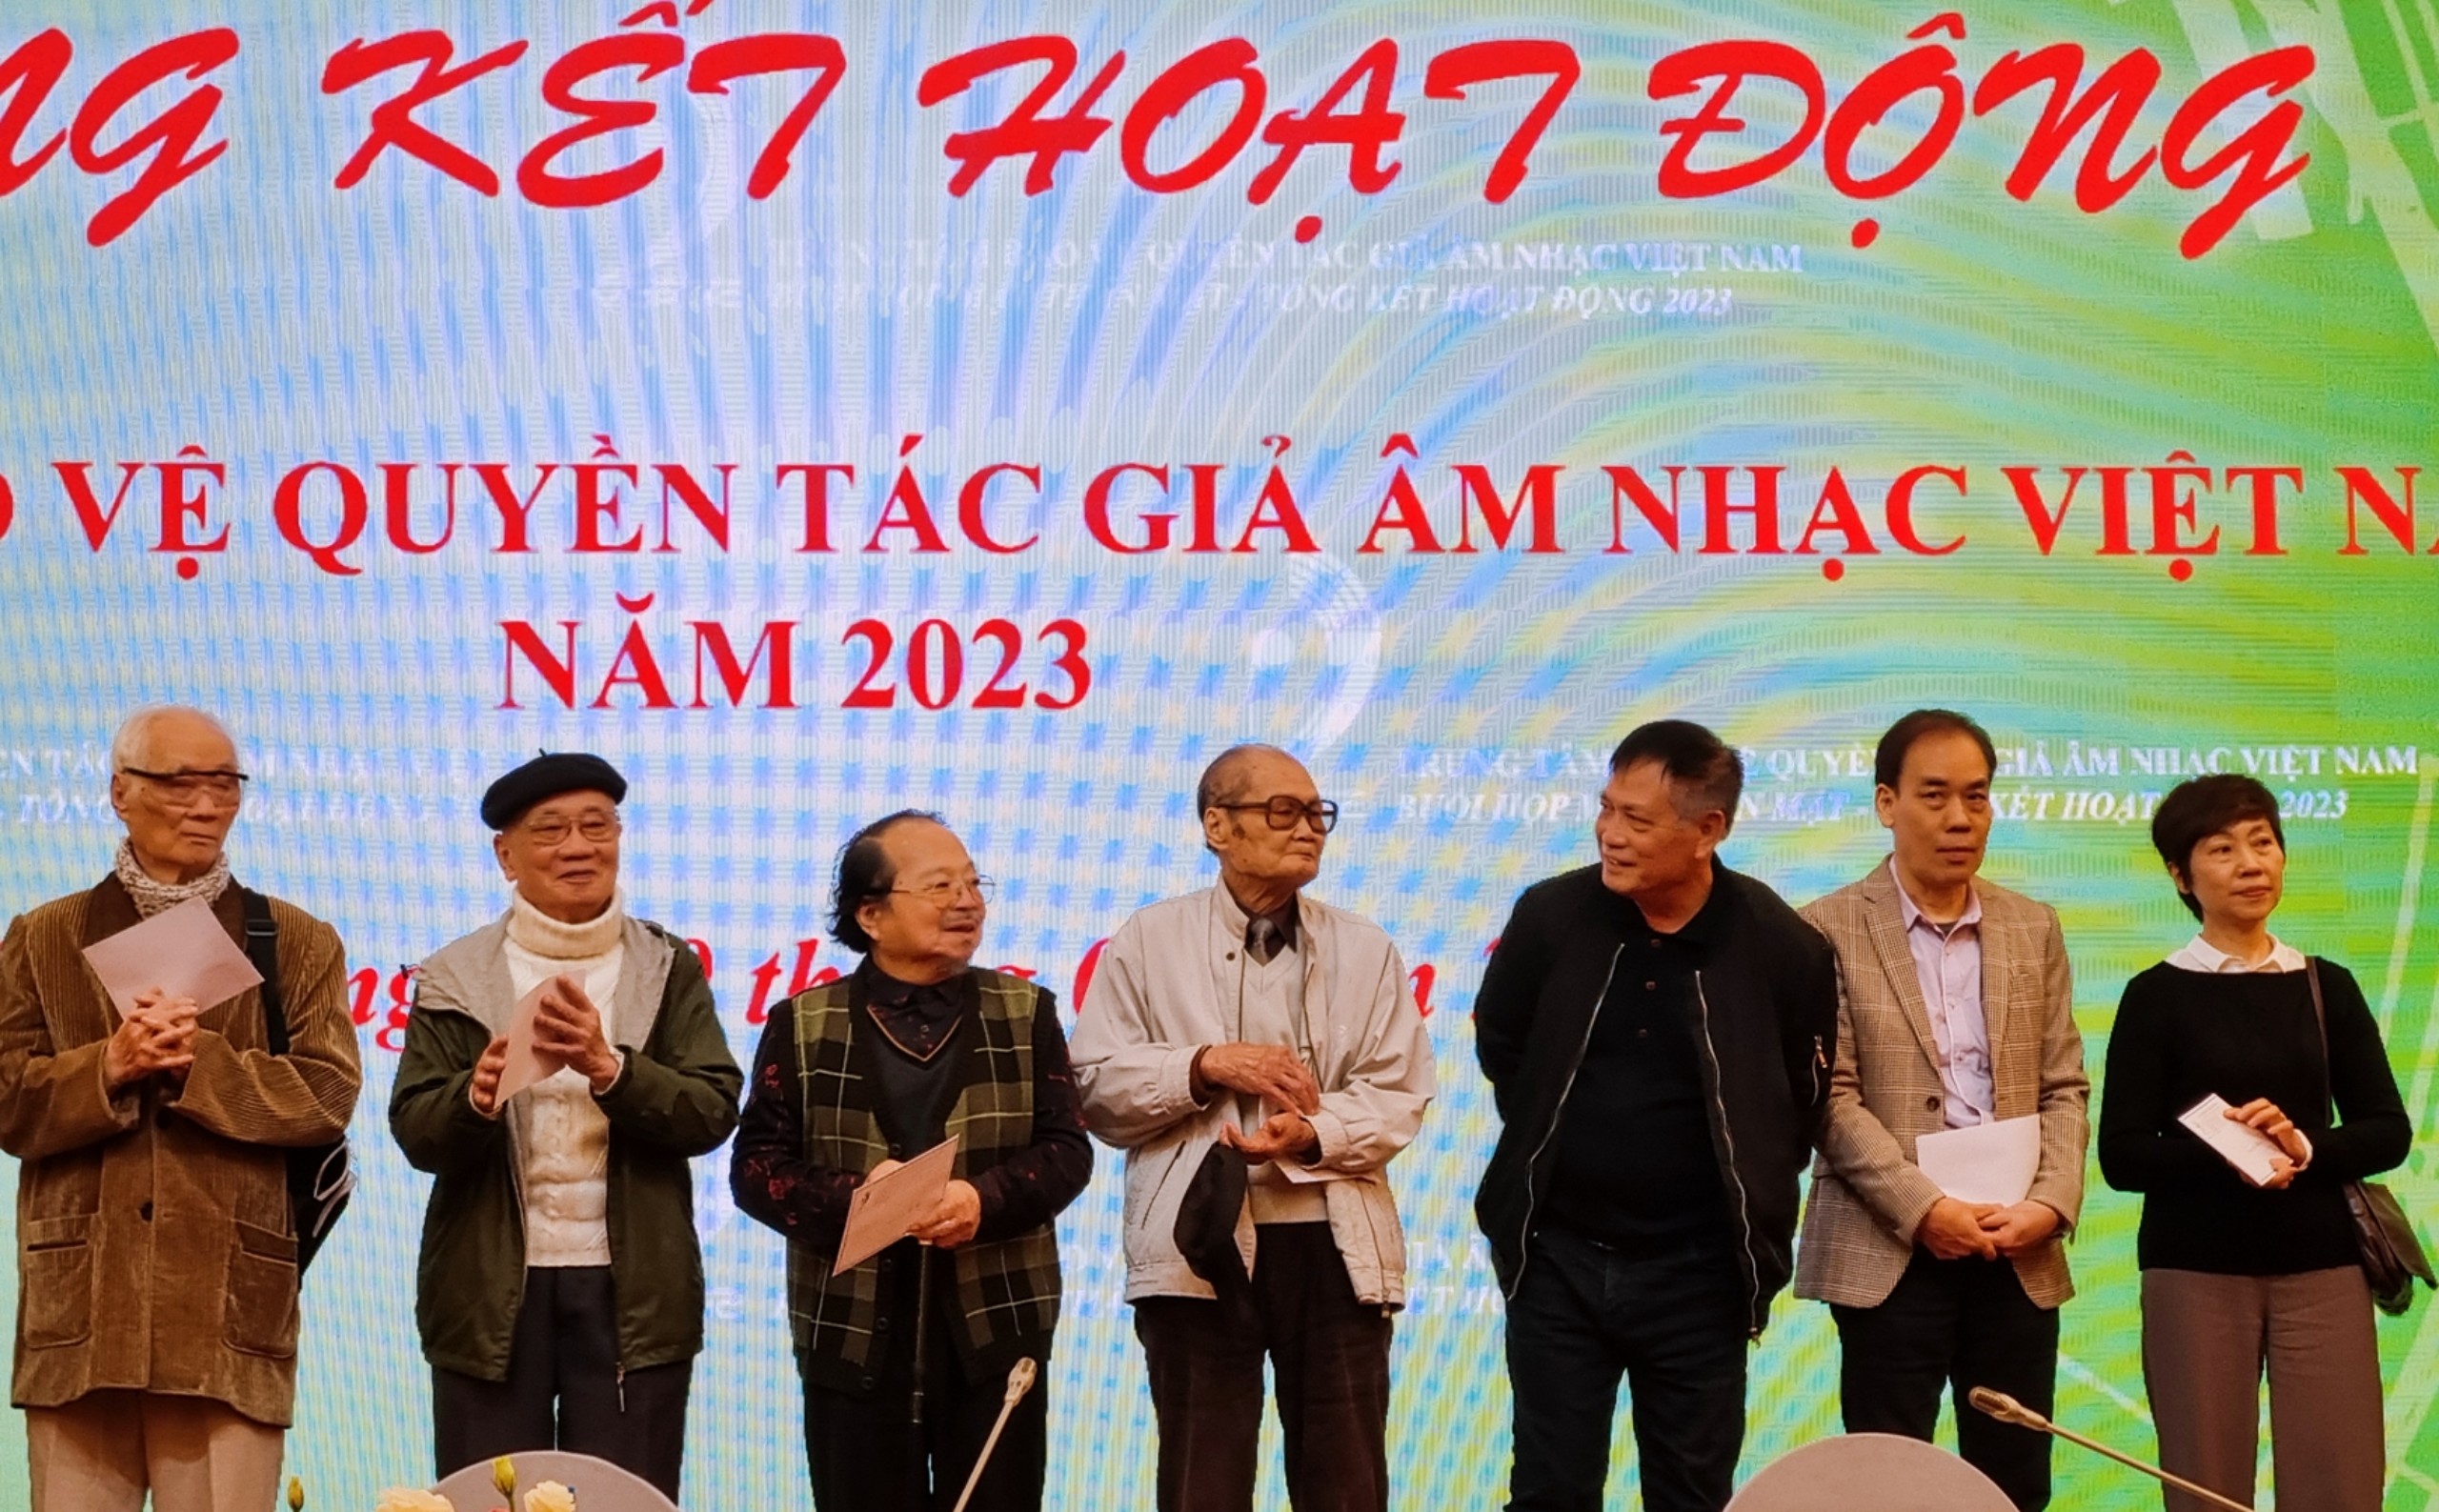 Bức tranh toàn cảnh nhiều điểm sáng của Trung tâm bảo vệ quyền tác giả âm nhạc Việt Nam năm 2023 - 4